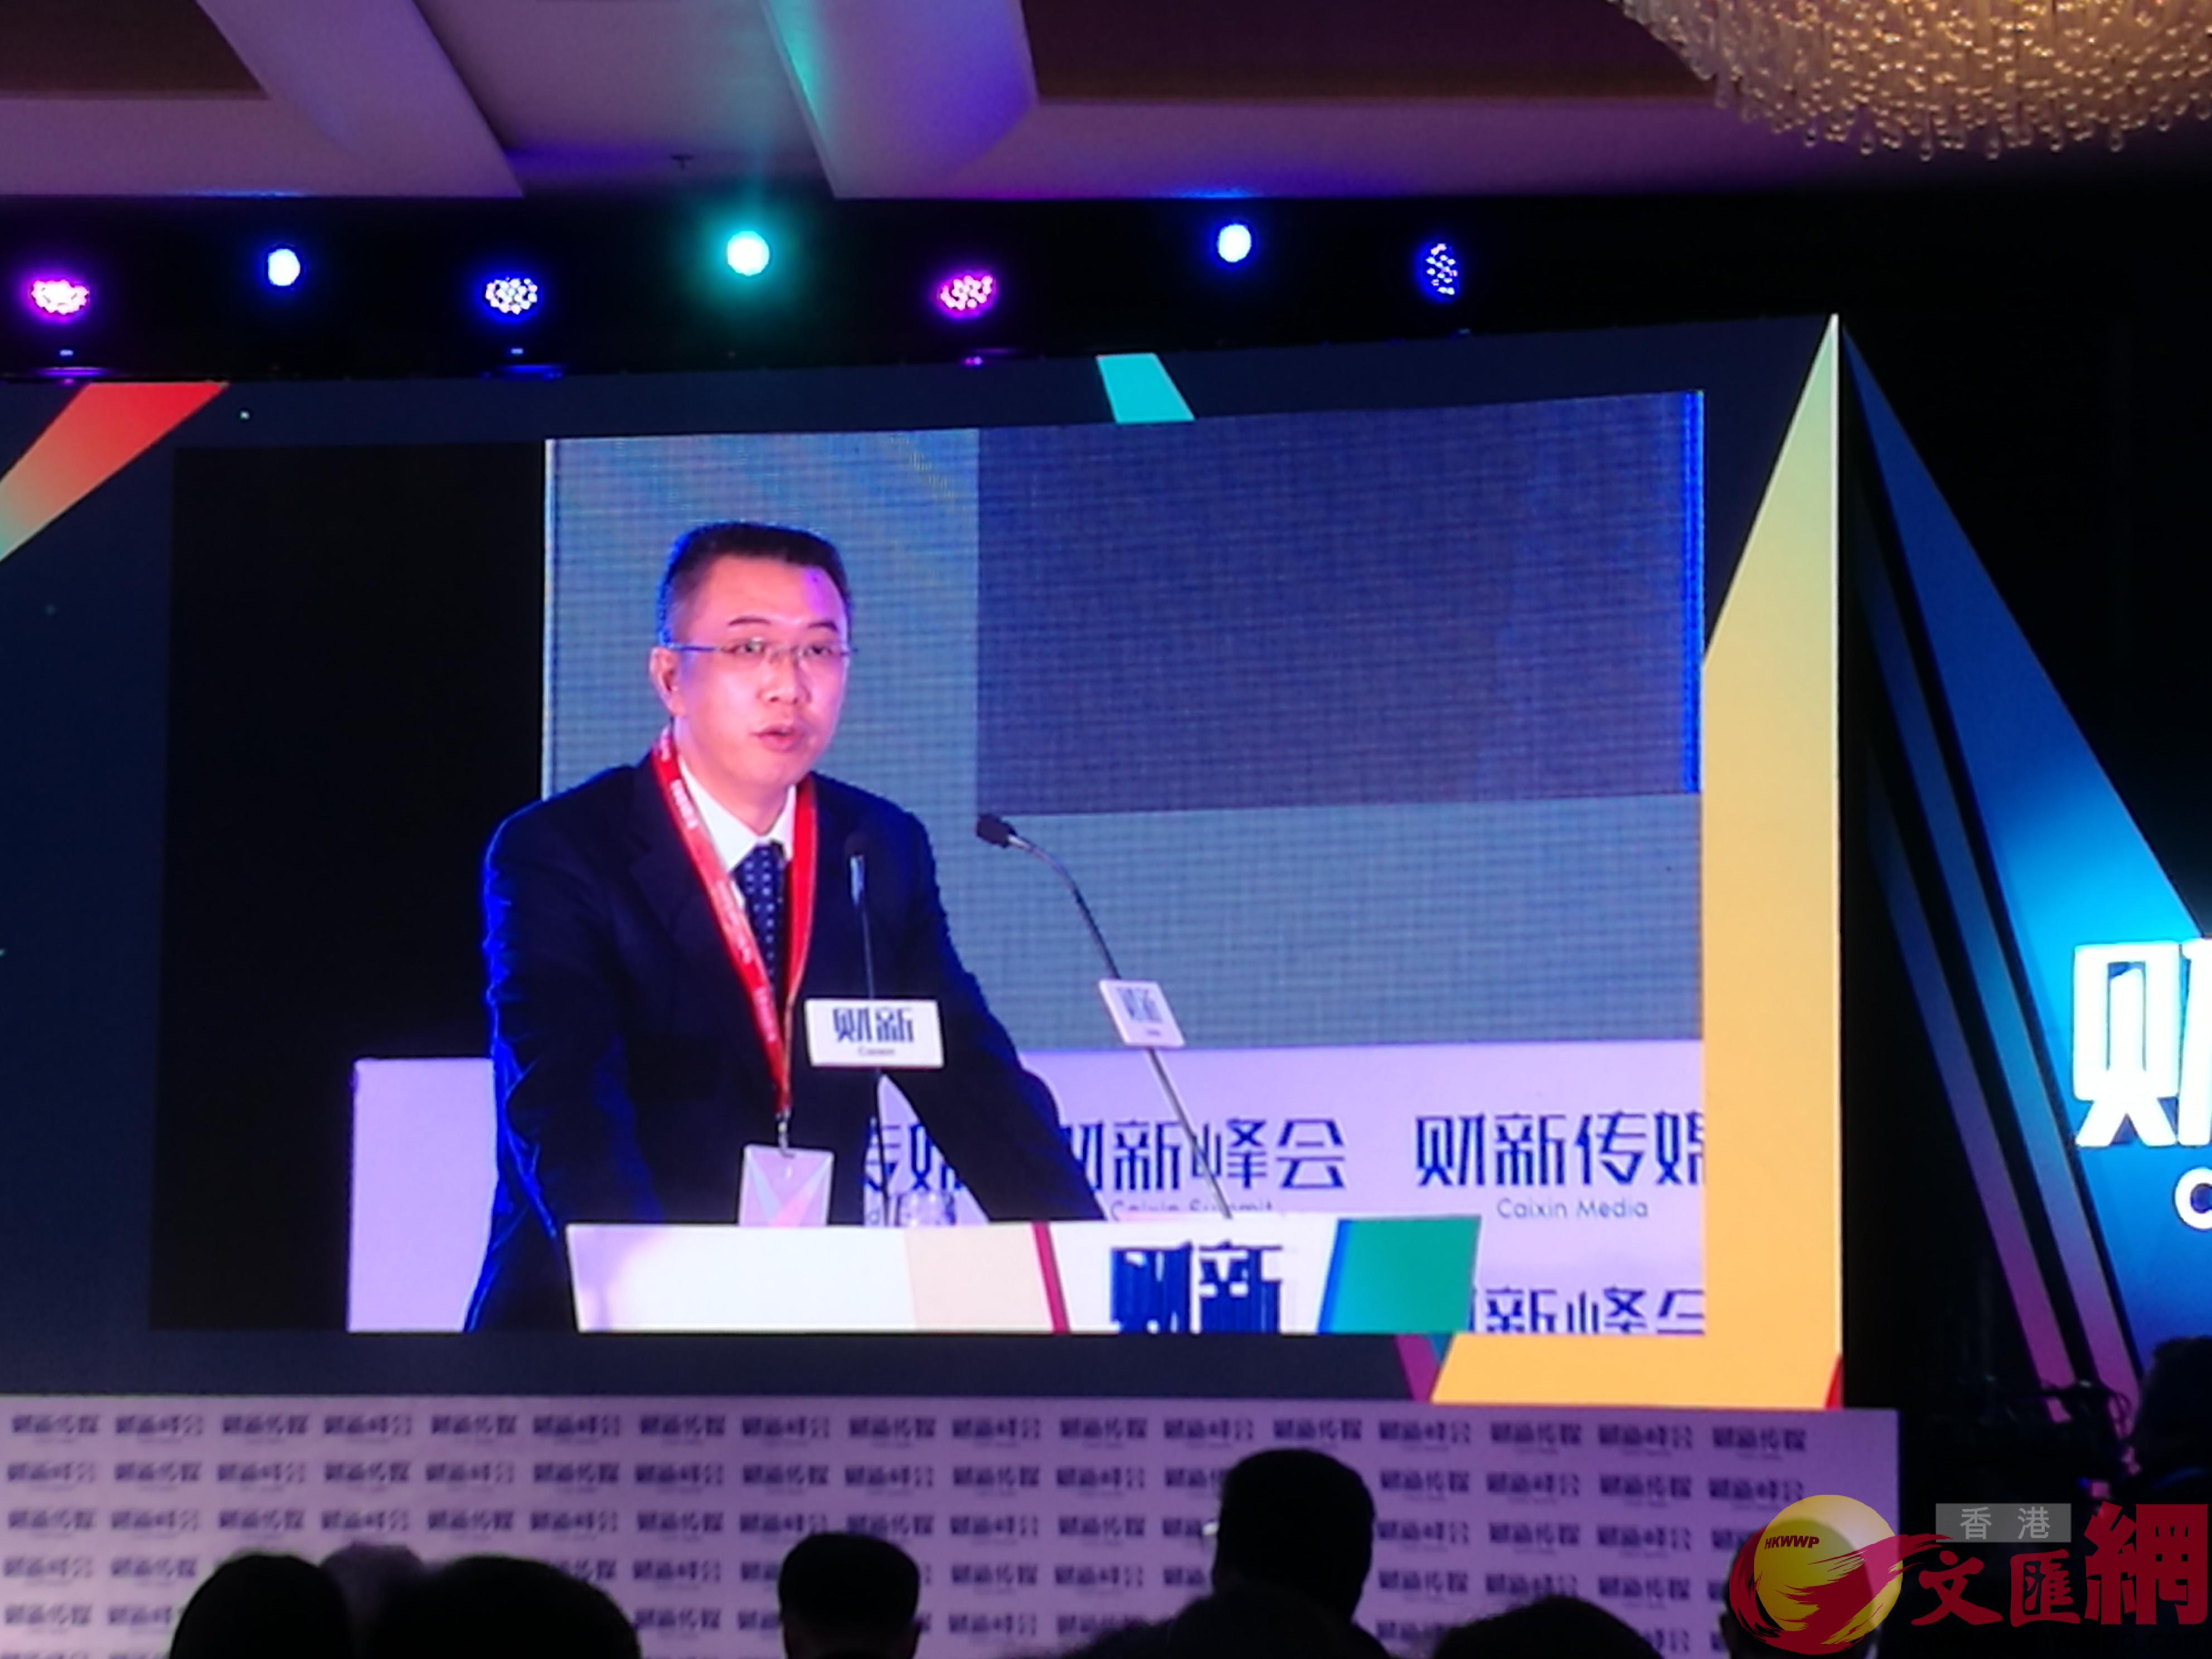 中國銀保監會副主席周亮19日在第九屆財新峰會上發表演講]張帥攝^